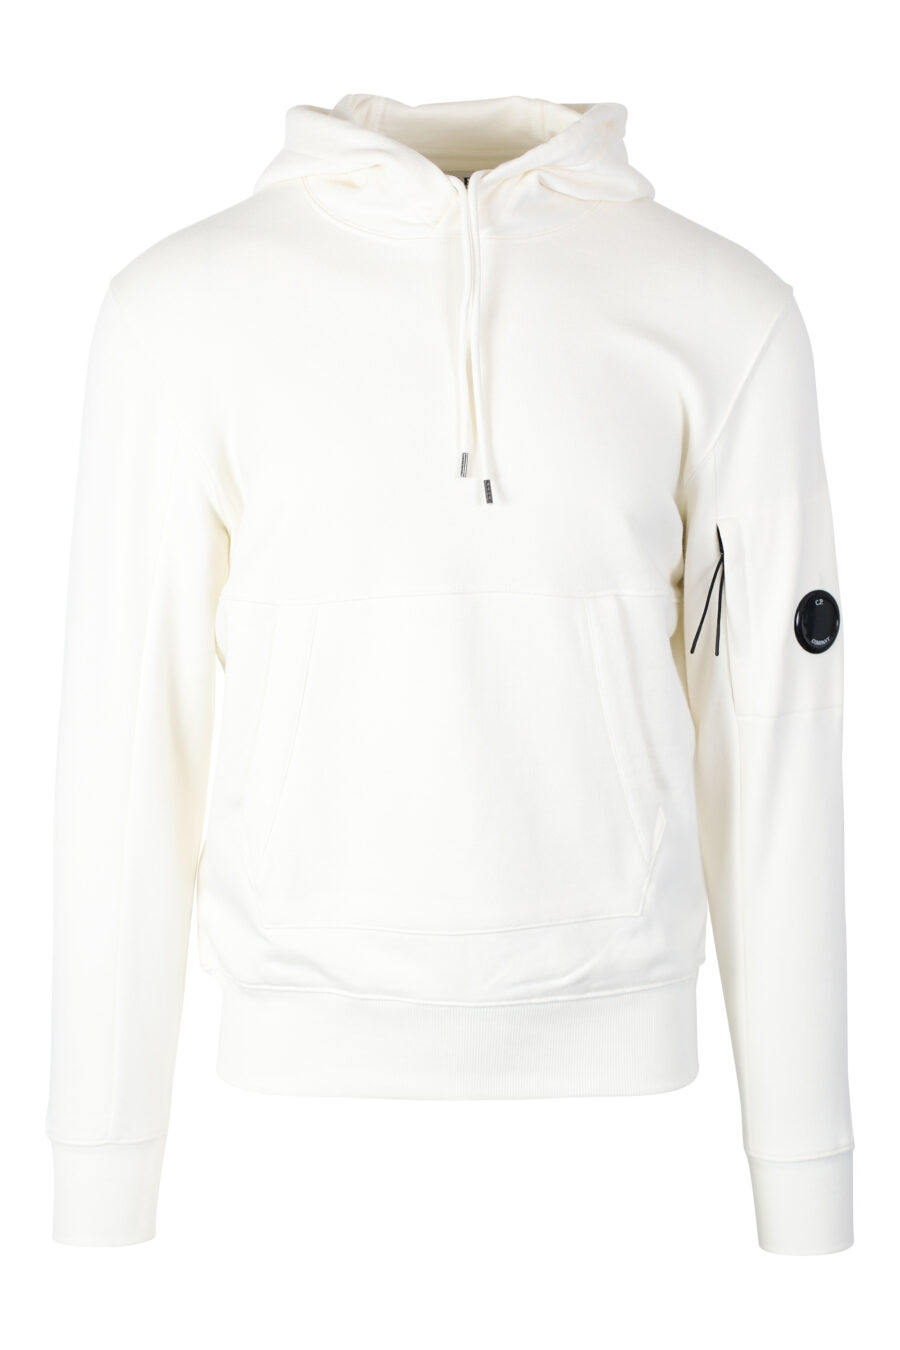 Sweat blanc avec capuche et mini-logo circulaire sur le côté - IMG 2387